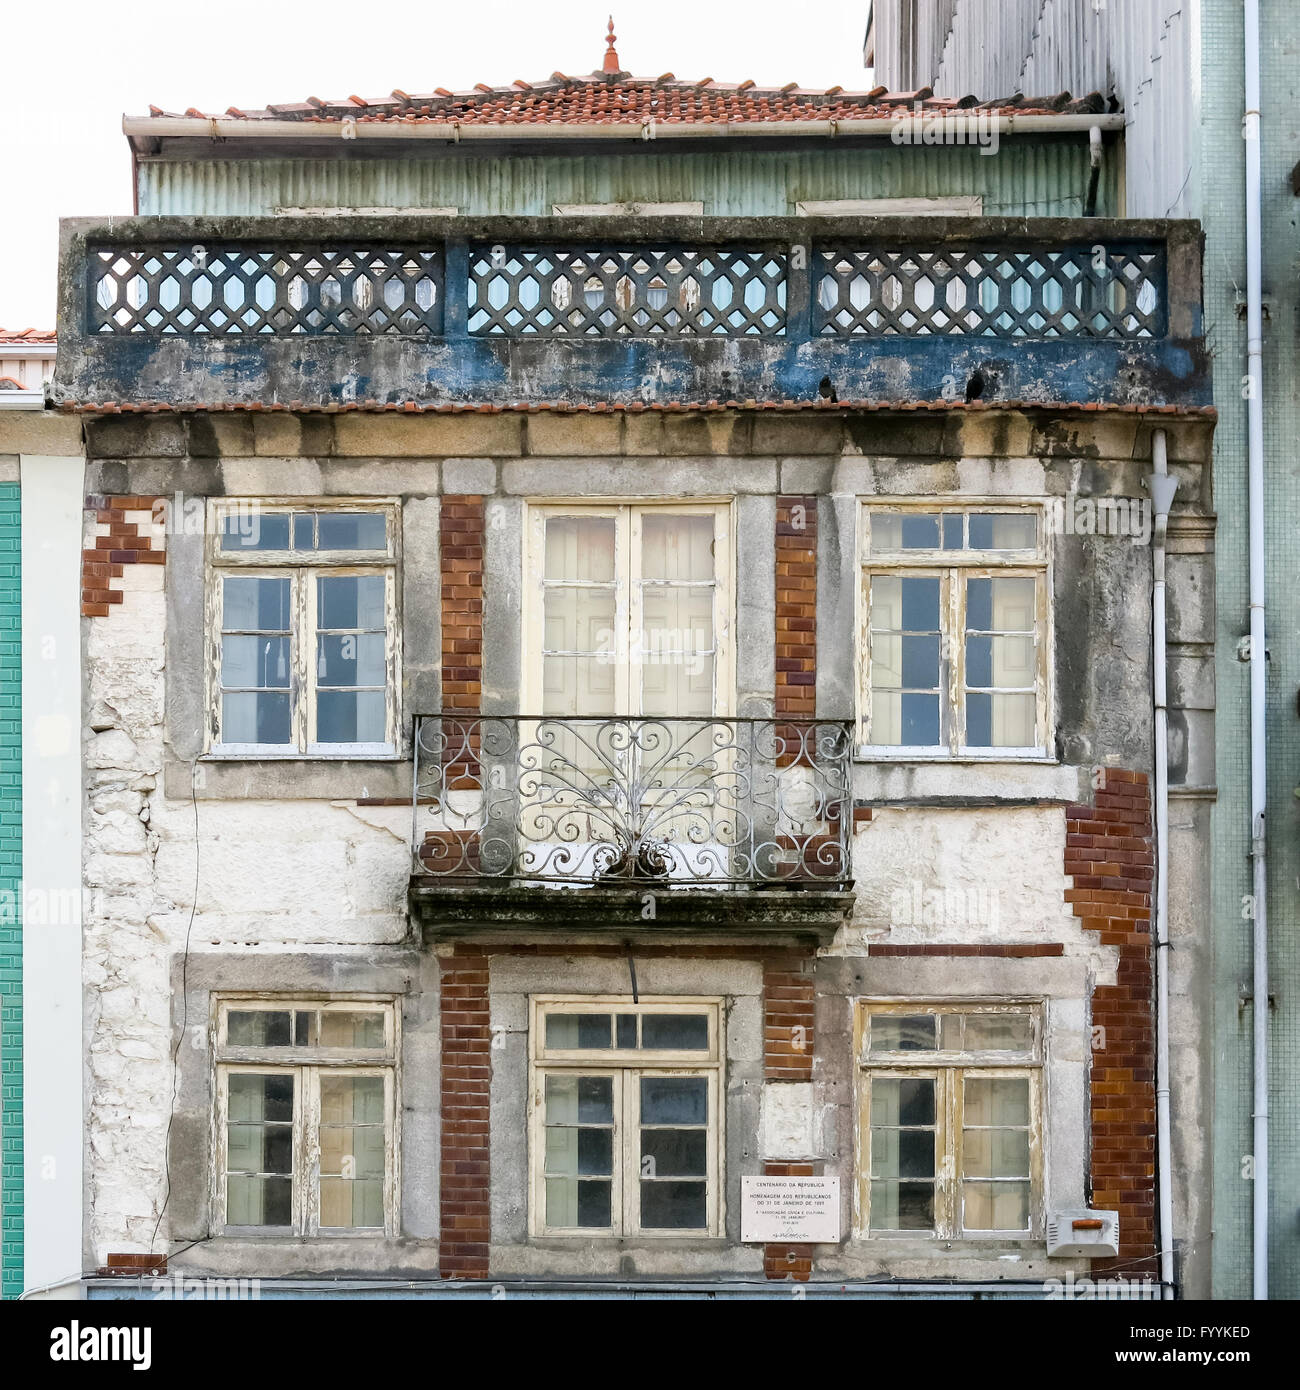 Fachada de la antigua casa abandonada en el centro de la ciudad de Oporto, Portugal Foto de stock